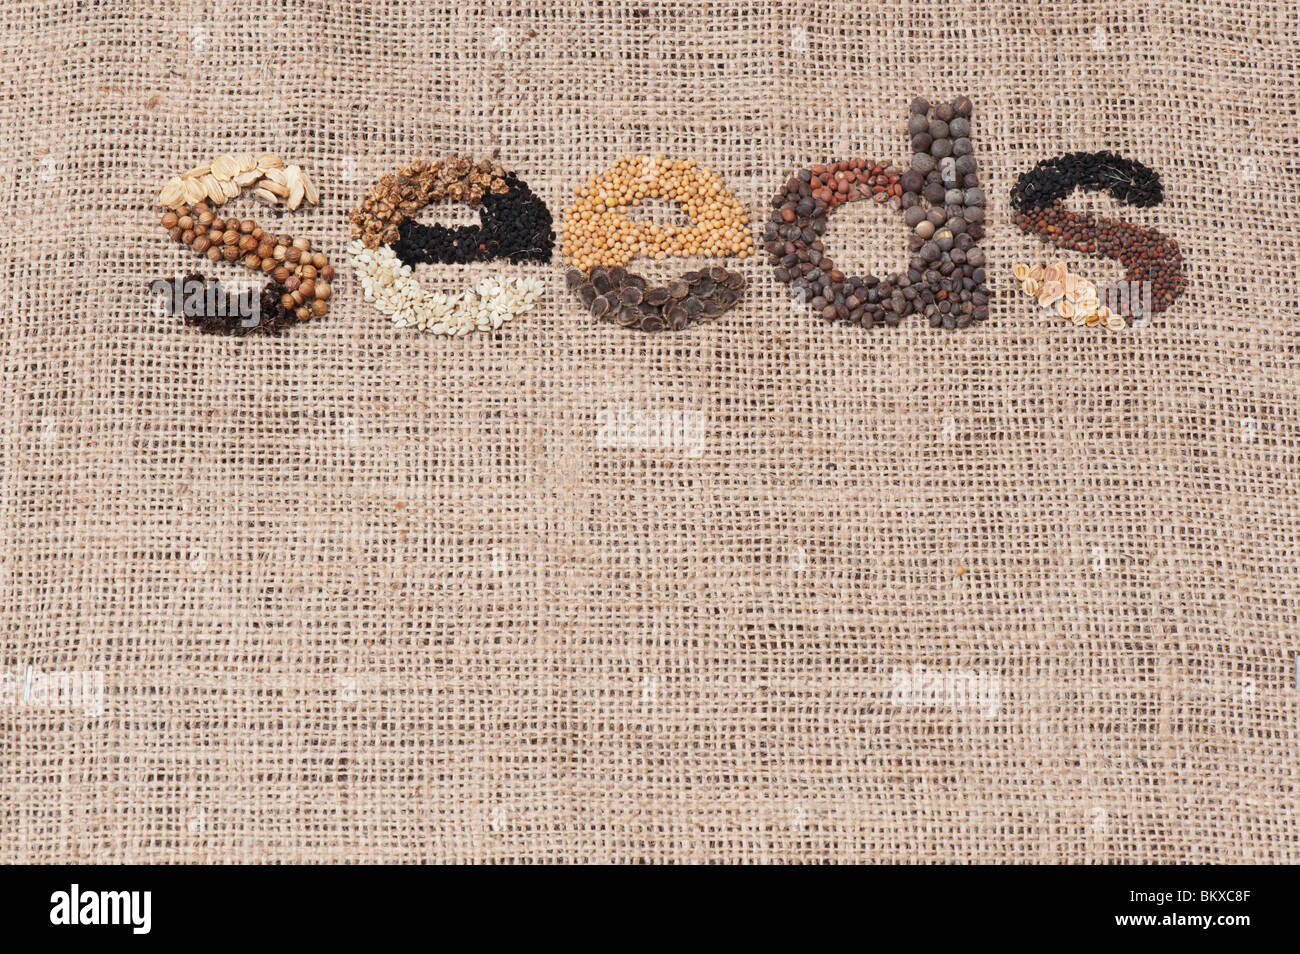 La parola "sementi" enunciato con verdure e semi di fiori su hessian Foto Stock